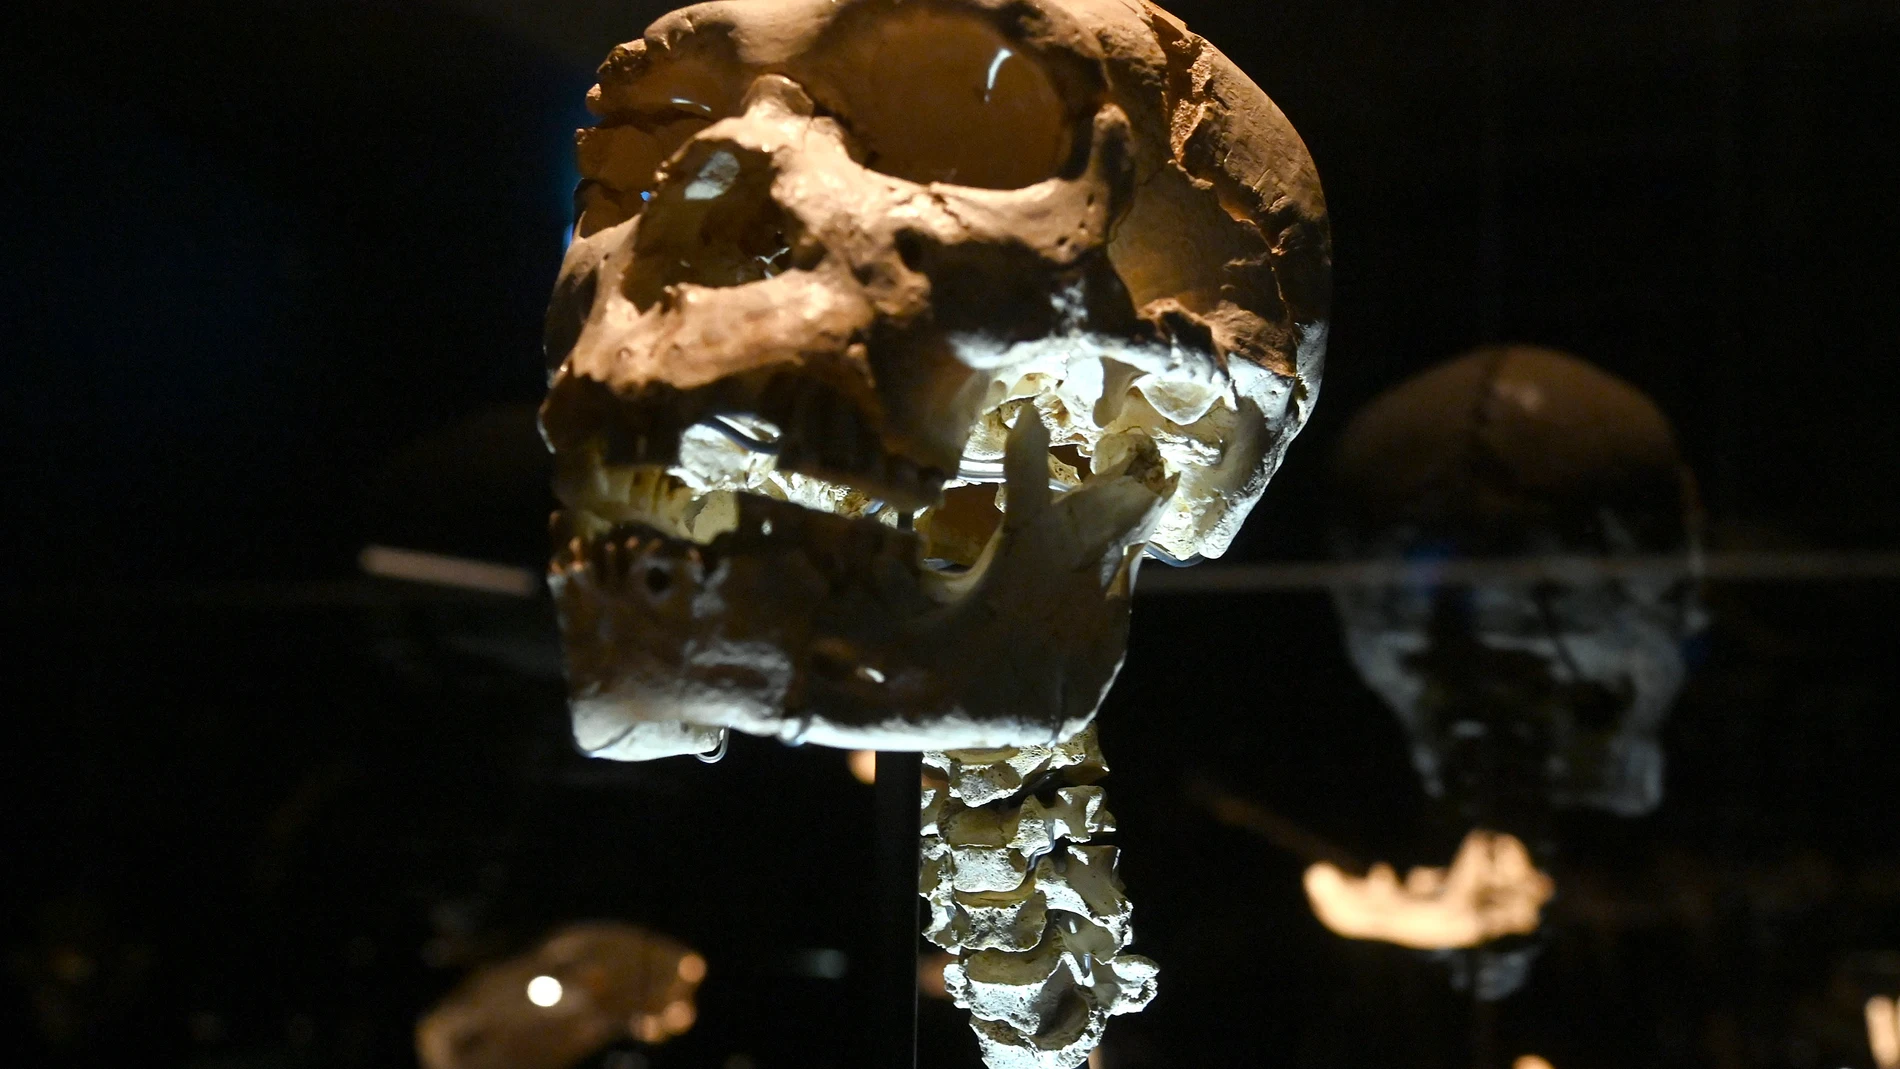 El cráneo de "Miguelón", expuesto en el Museo de la Evolución Humana (Burgos)